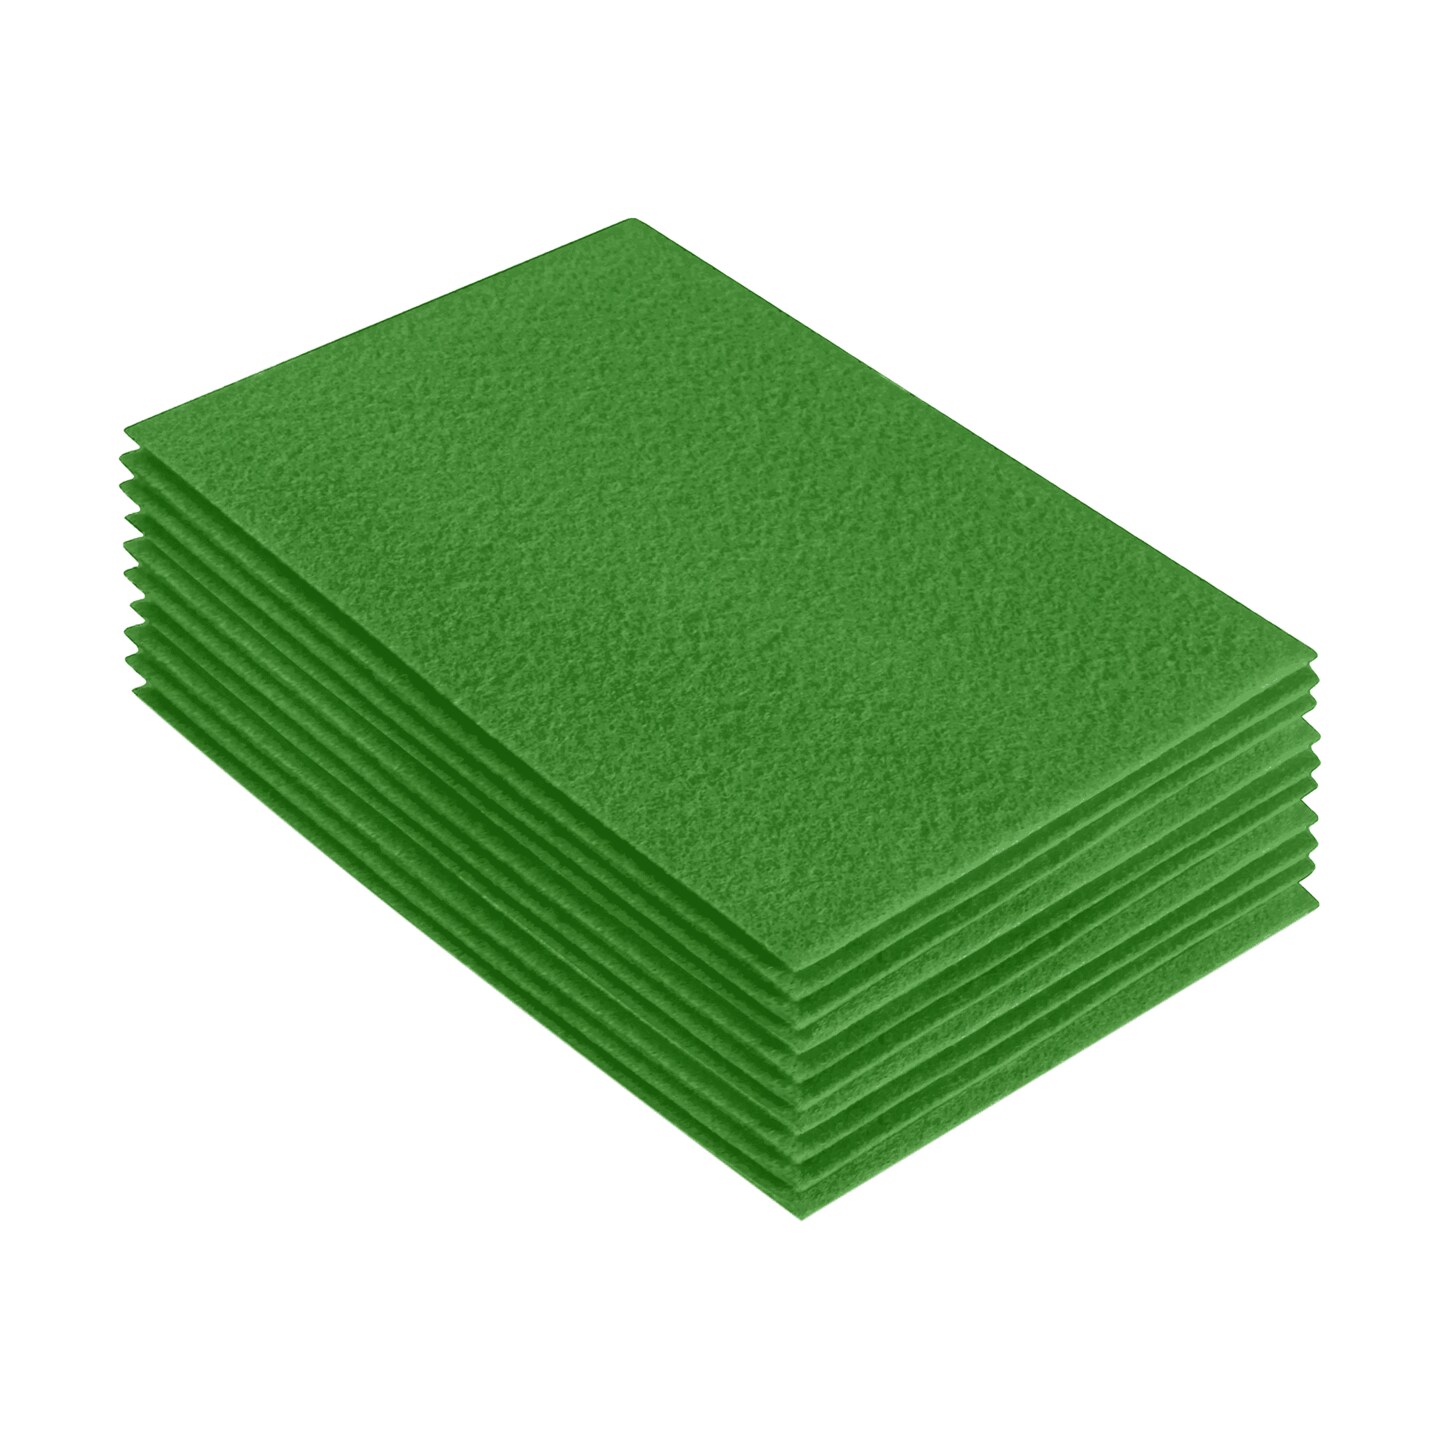 Green Felt Fabric & Supplies